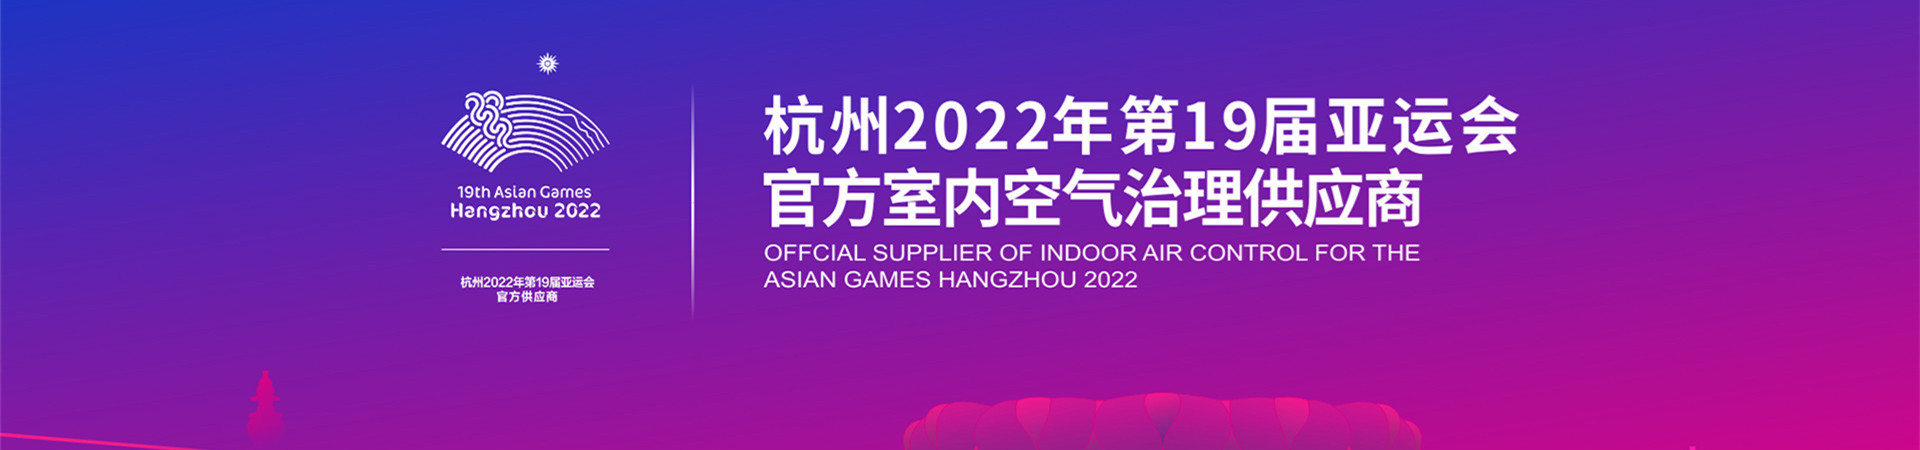 杭州2022年第19屆亞運會官方室內空氣治理供應商